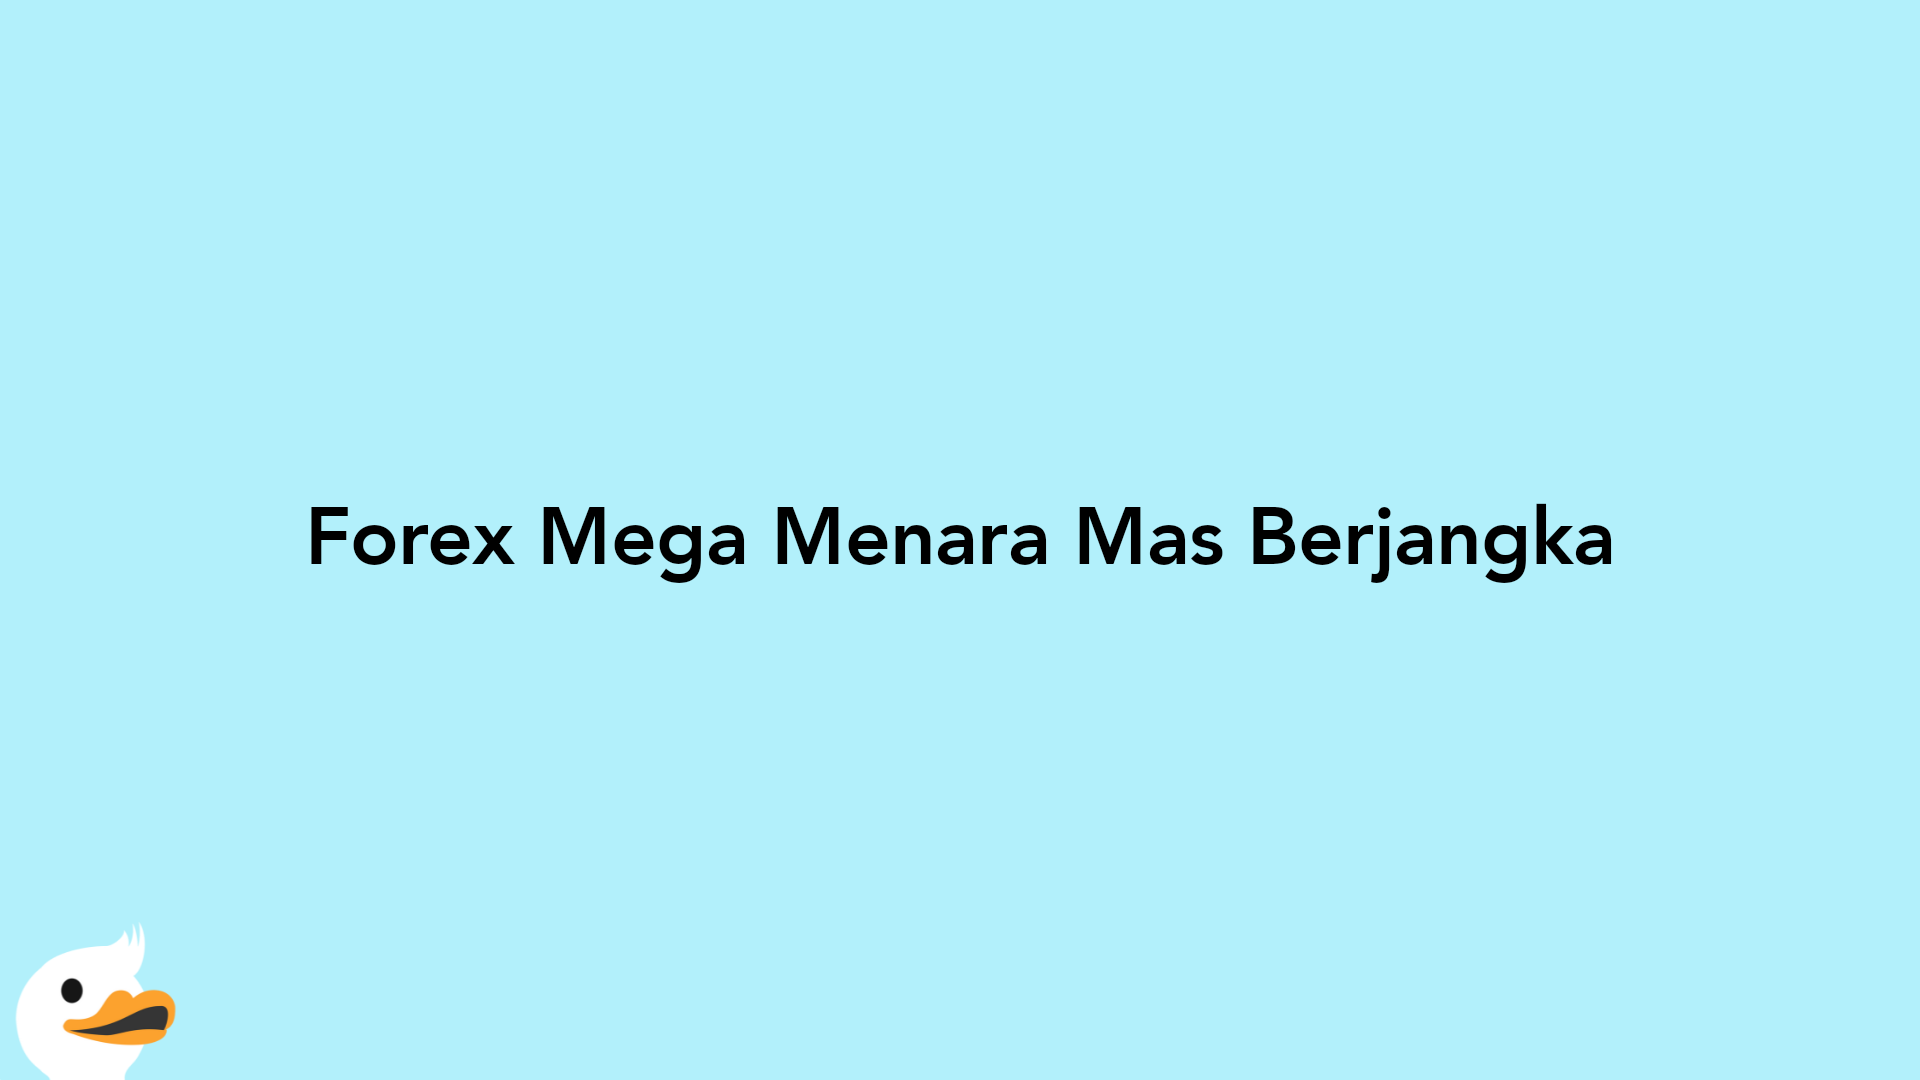 Forex Mega Menara Mas Berjangka